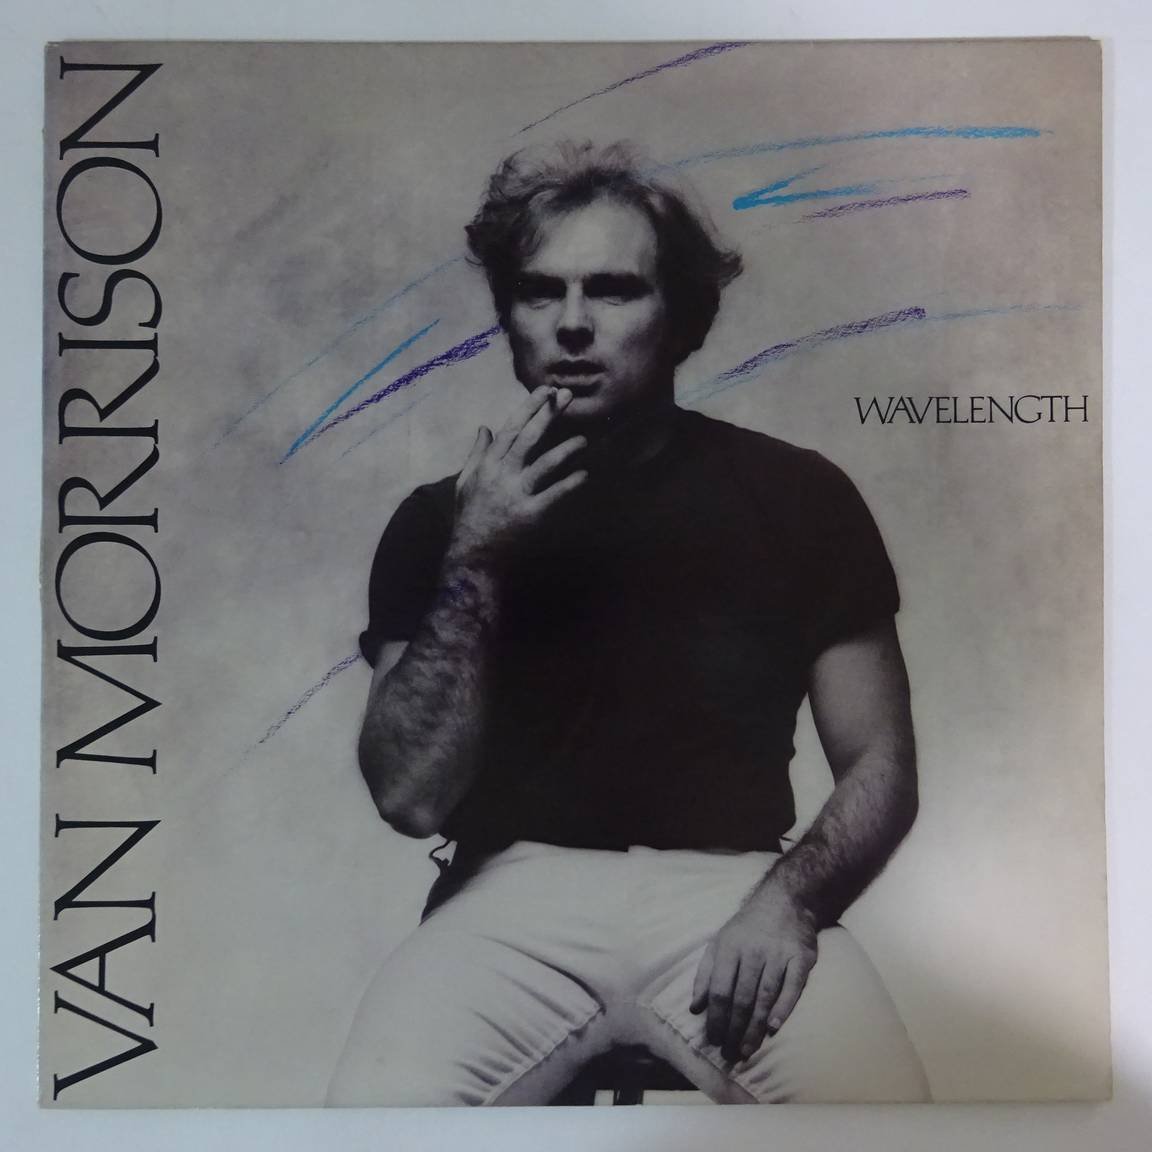 11180235;【US盤】Van Morrison / Wavelength_画像1